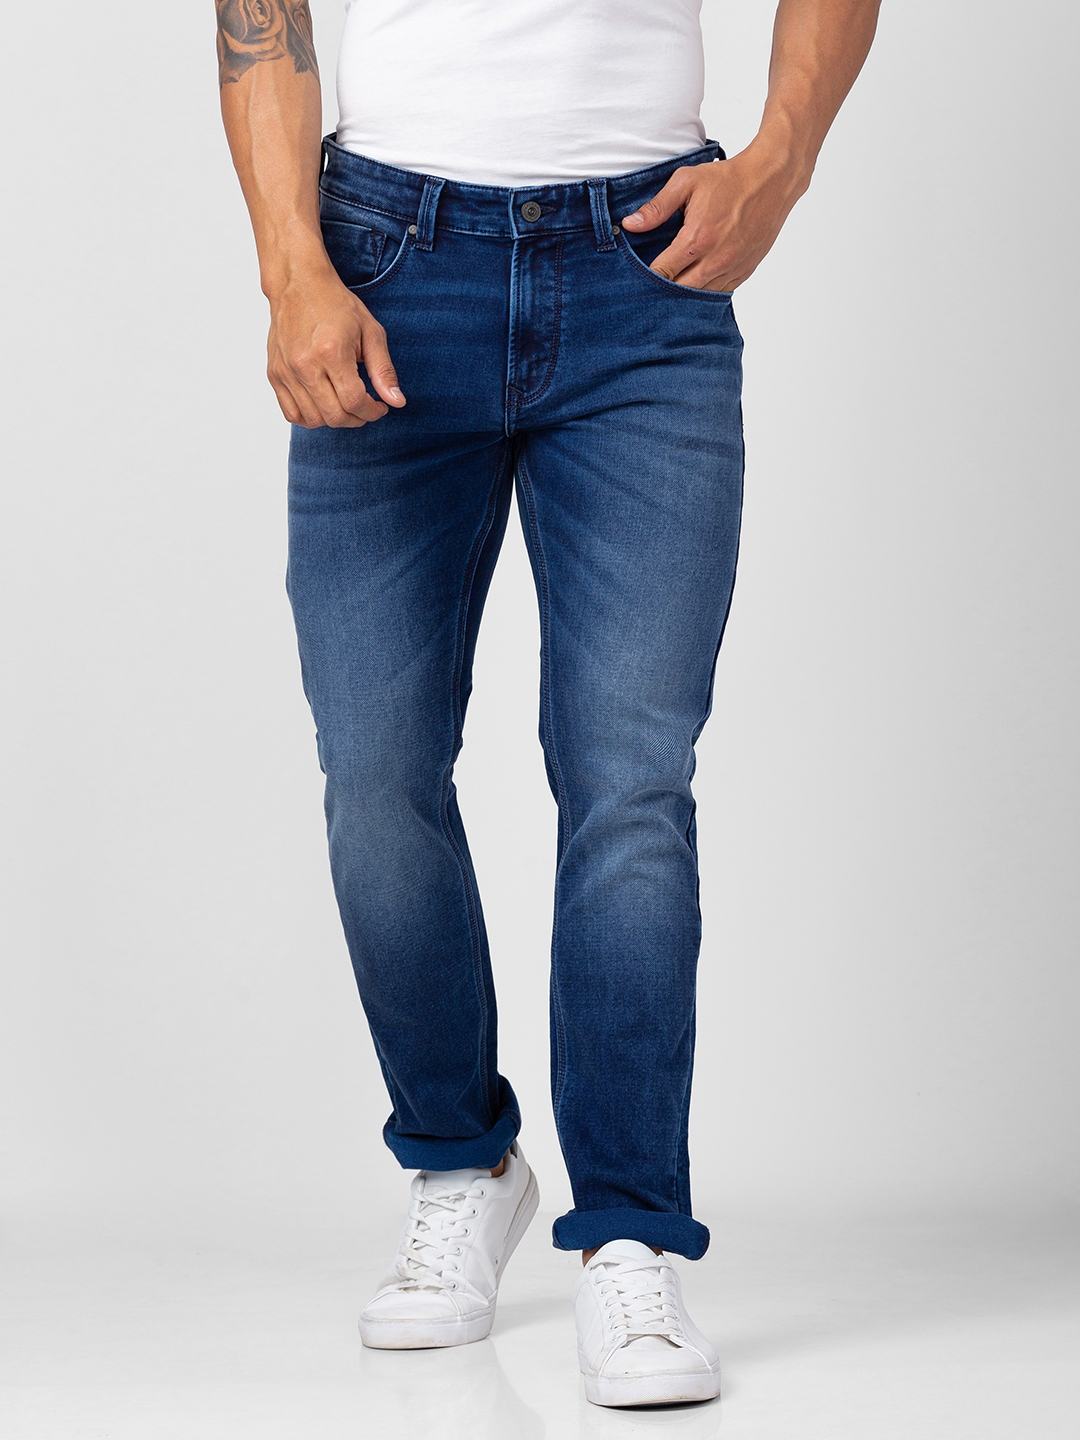 spykar | Men's Blue Cotton Jeans 0